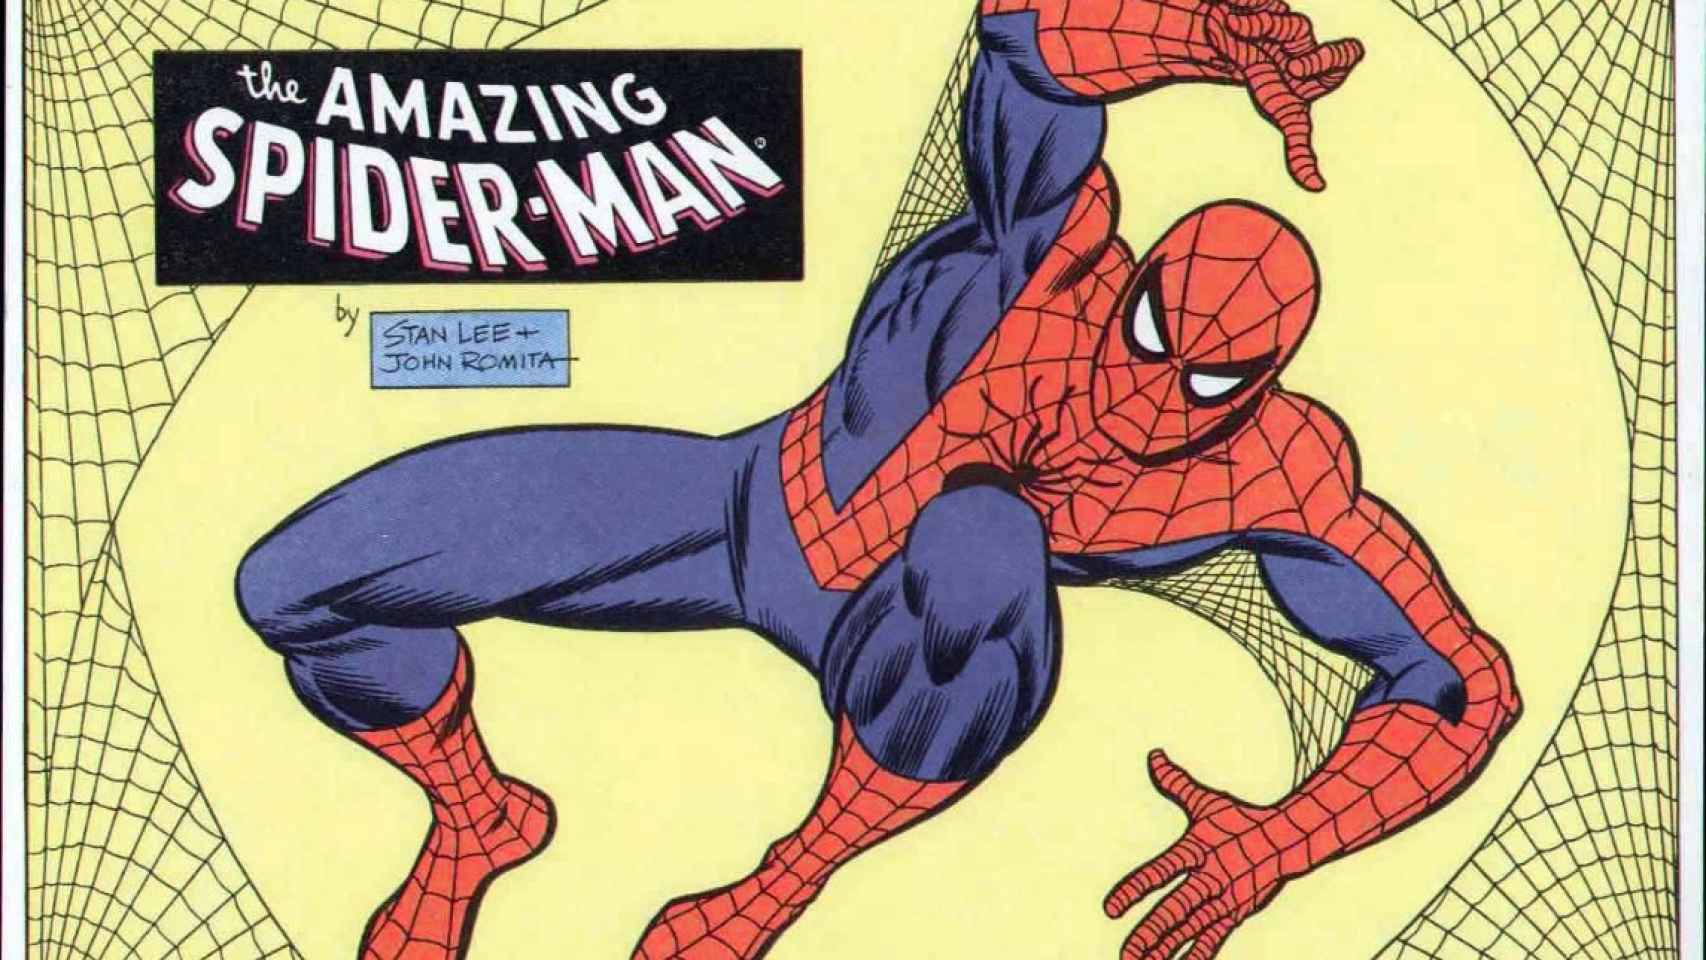 El increible Spiderman, un héroe arácnido al servicio del bien